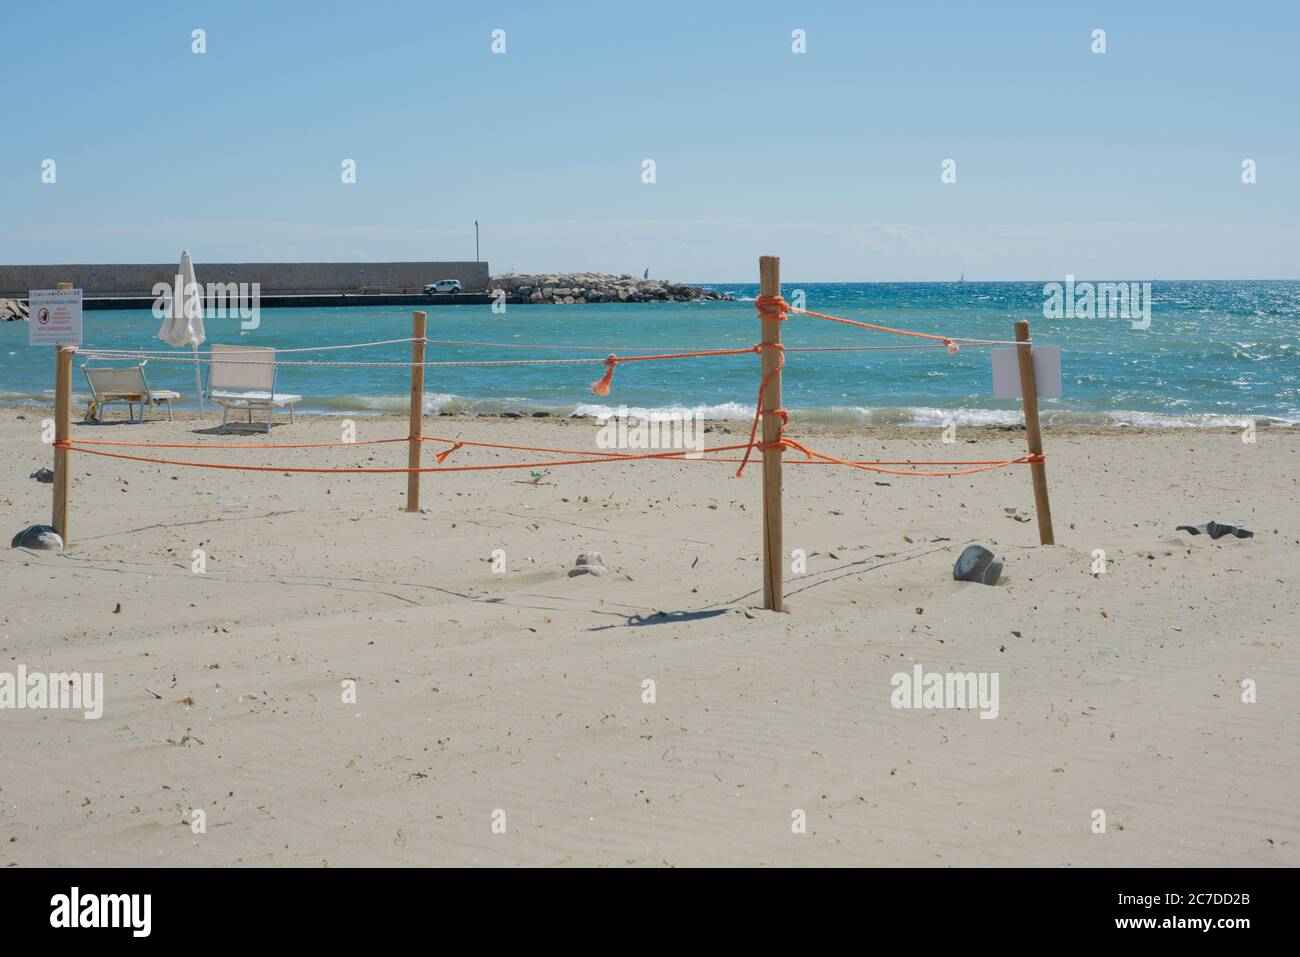 Un nid de tortue trouvé sur la plage de Casal Velino Marina dans la province de Salerne, Italie. Banque D'Images